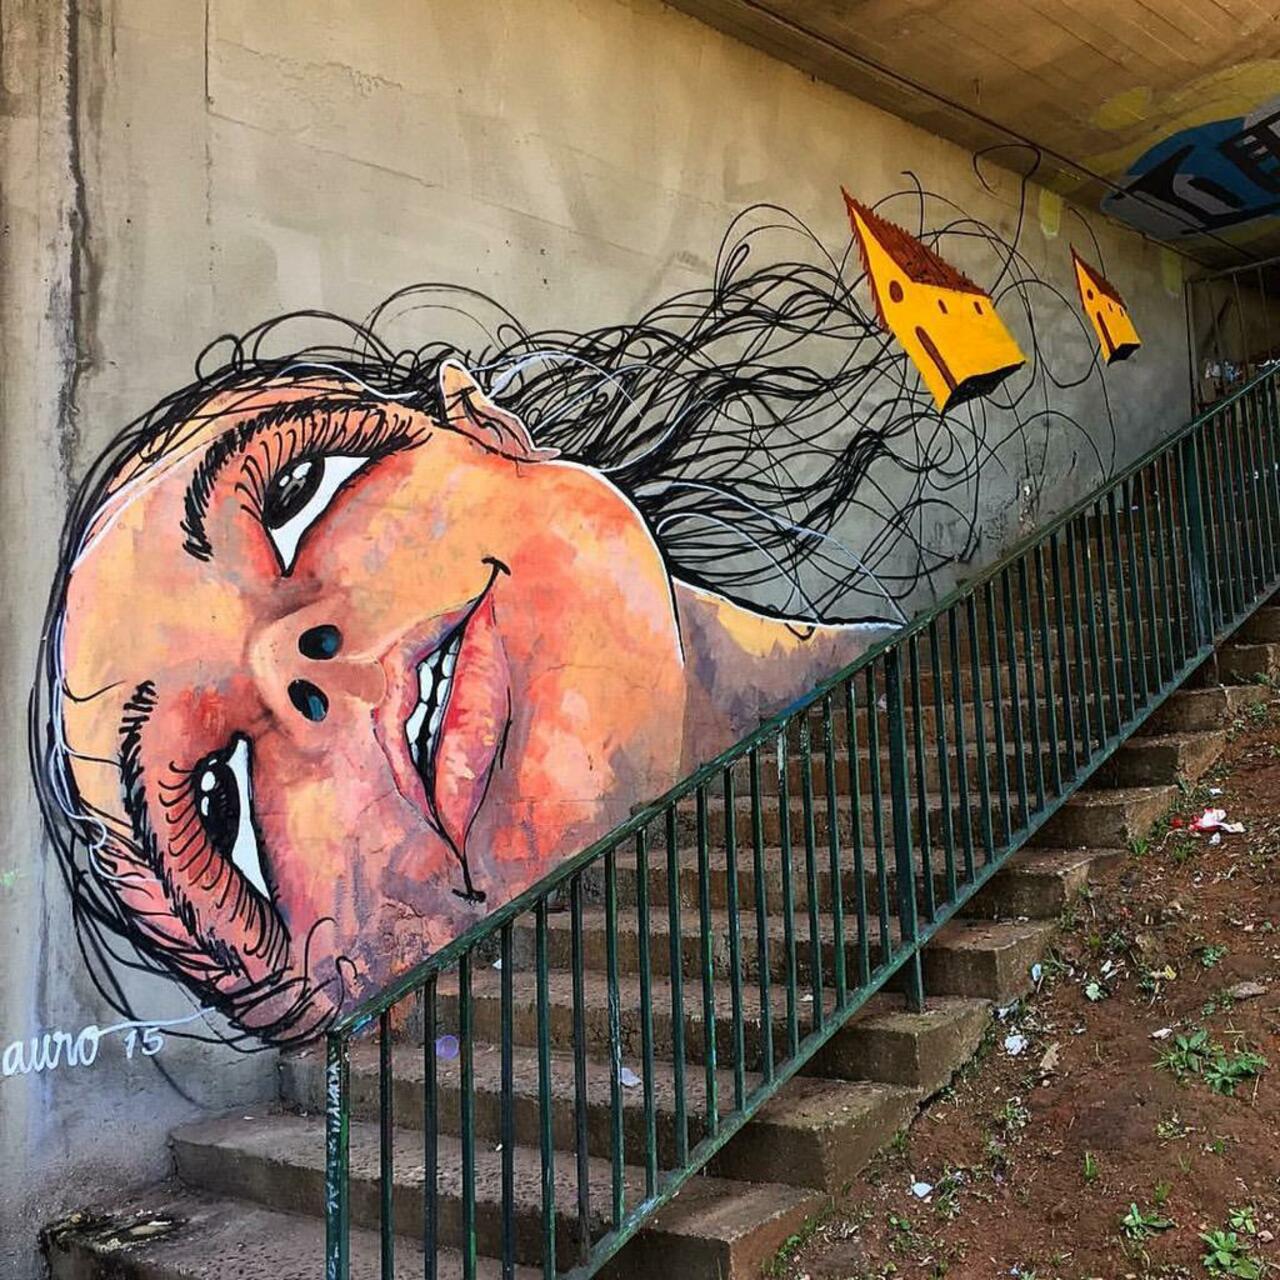 Street Art by Reveracidade in São Paulo 

#art #graffiti #mural #streetart http://t.co/KVK18n5Obr